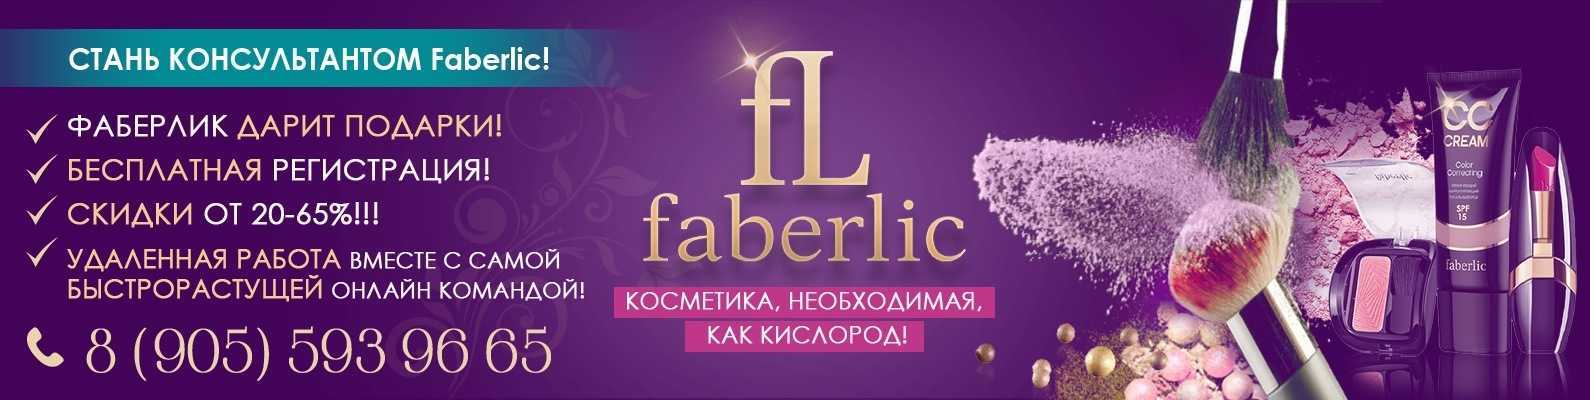 10 лучших кремов для лица faberlic - рейтинг 2021